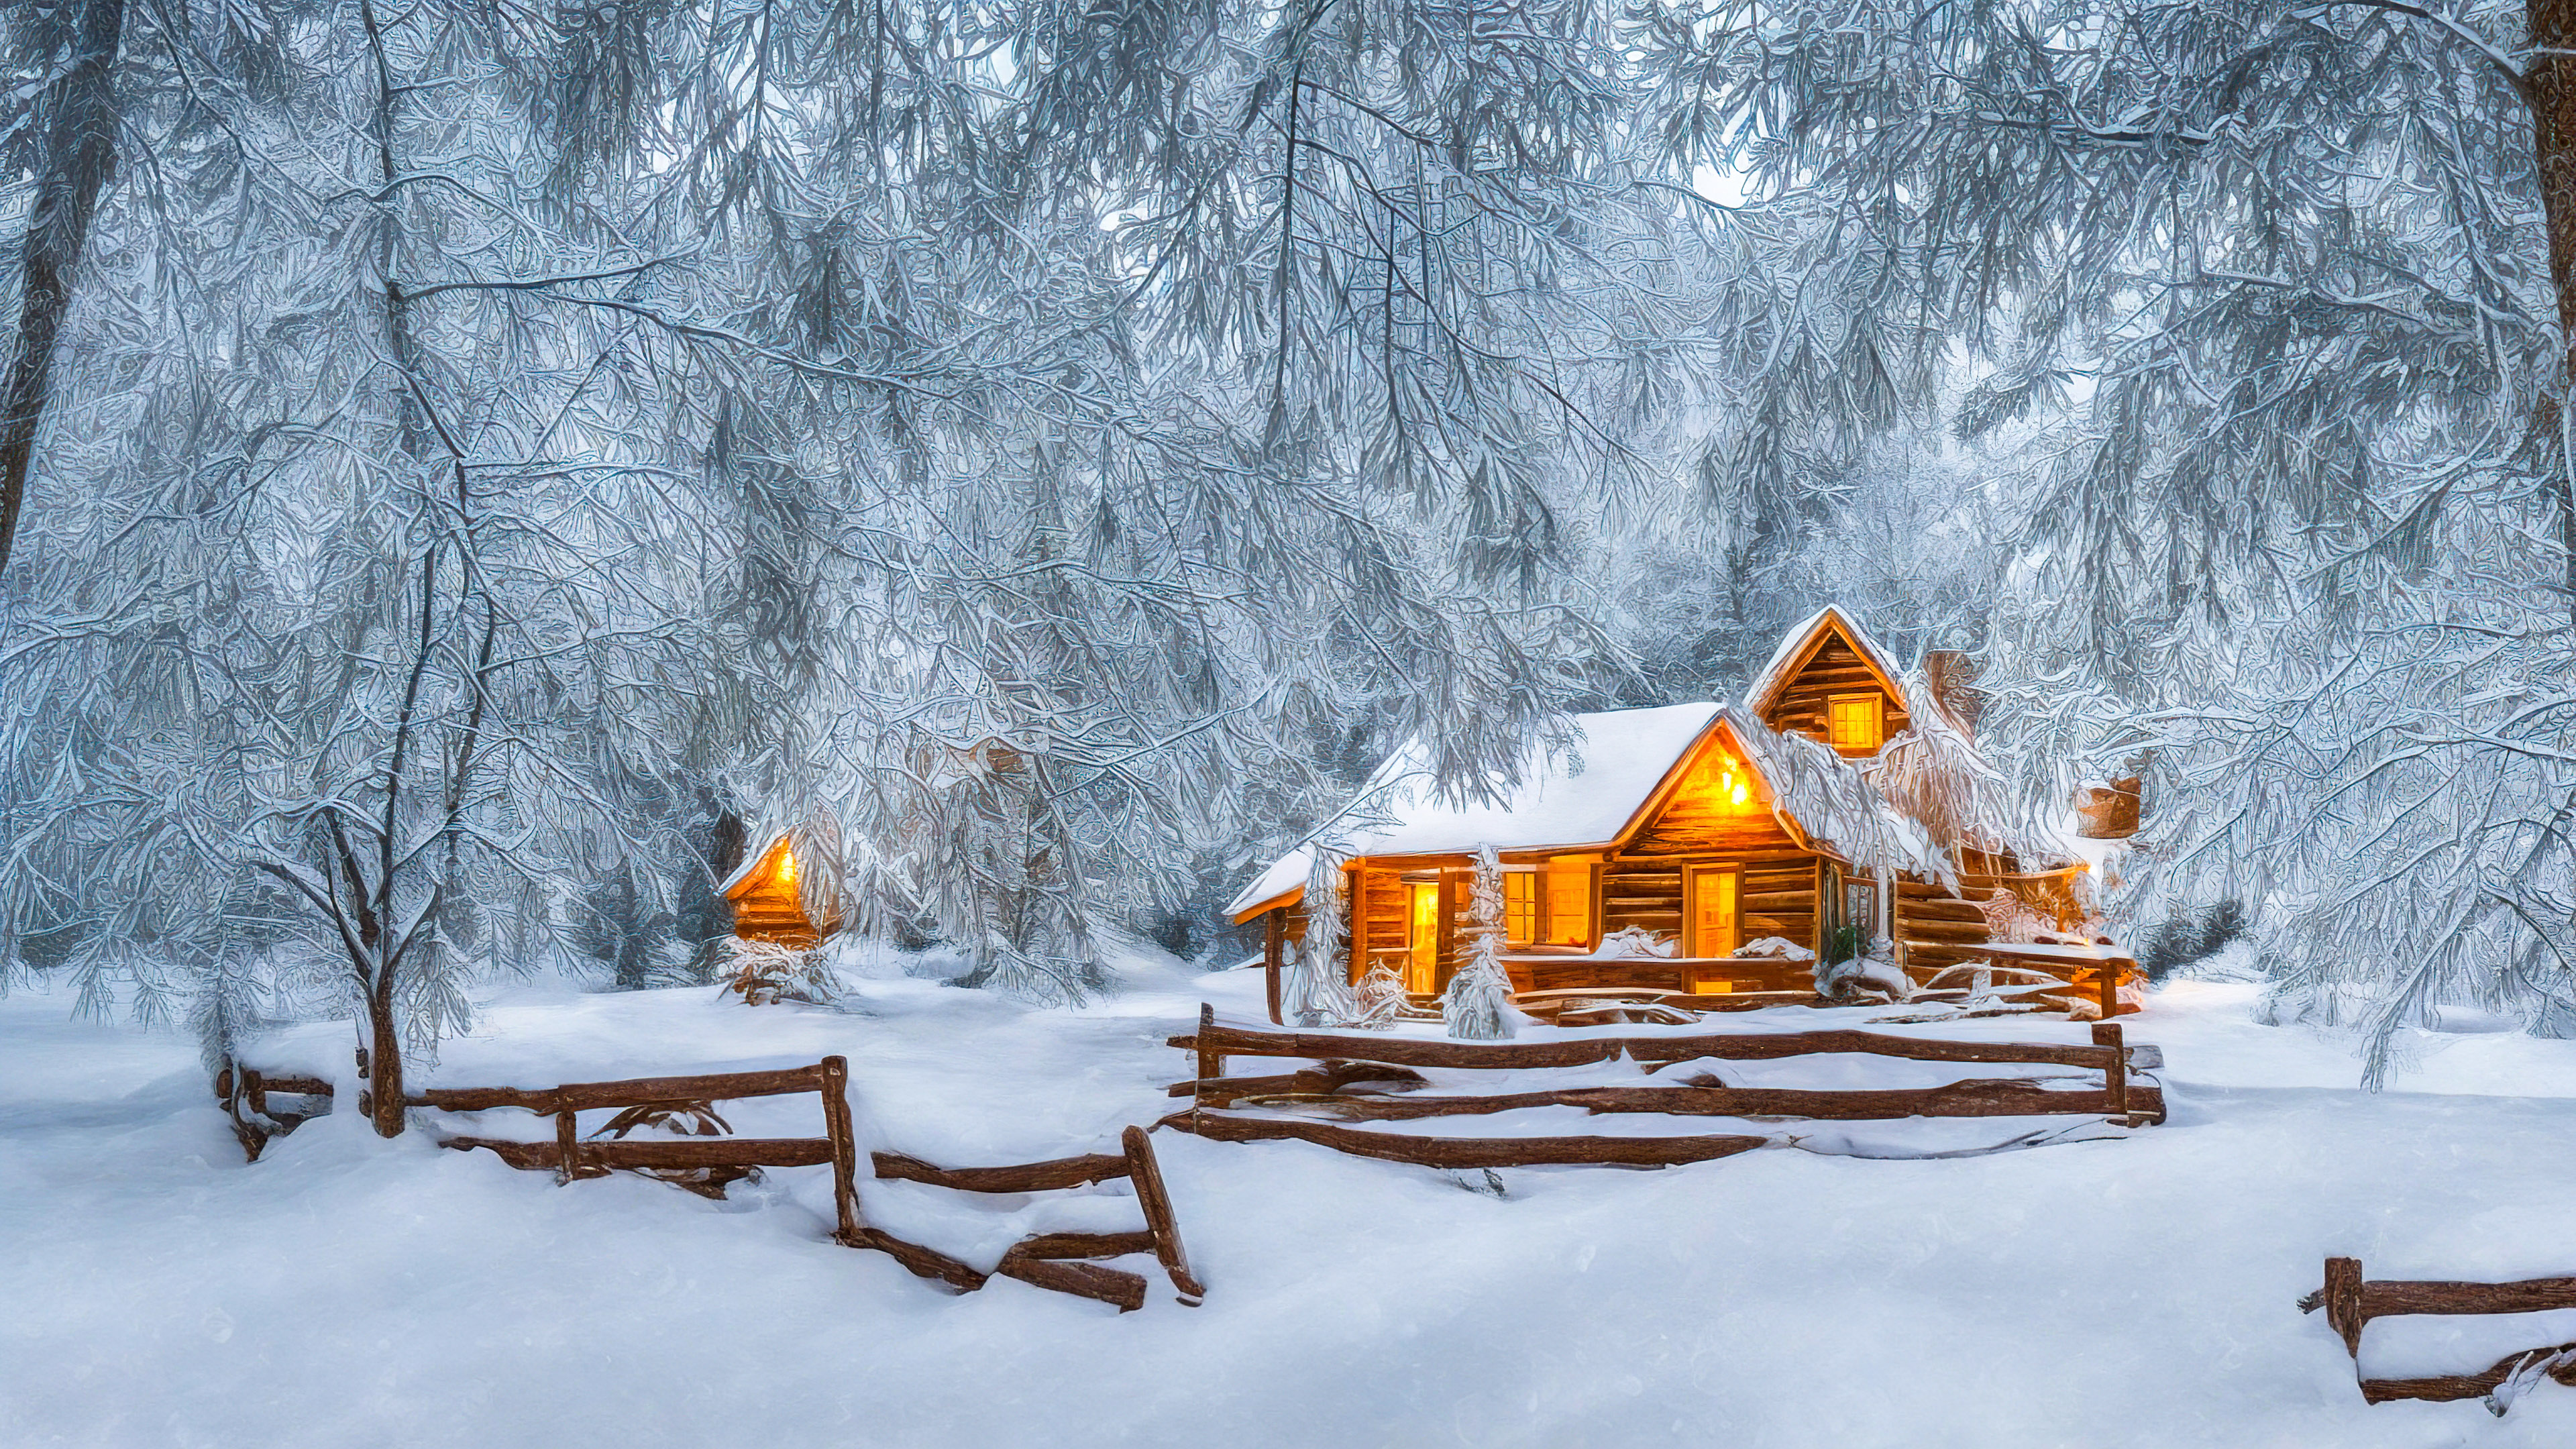 Fonds d’écran HD 1920x1080 de la nature avec l’hiver, des arbres couverts de neige et une cabane ornée de lumières de fête.